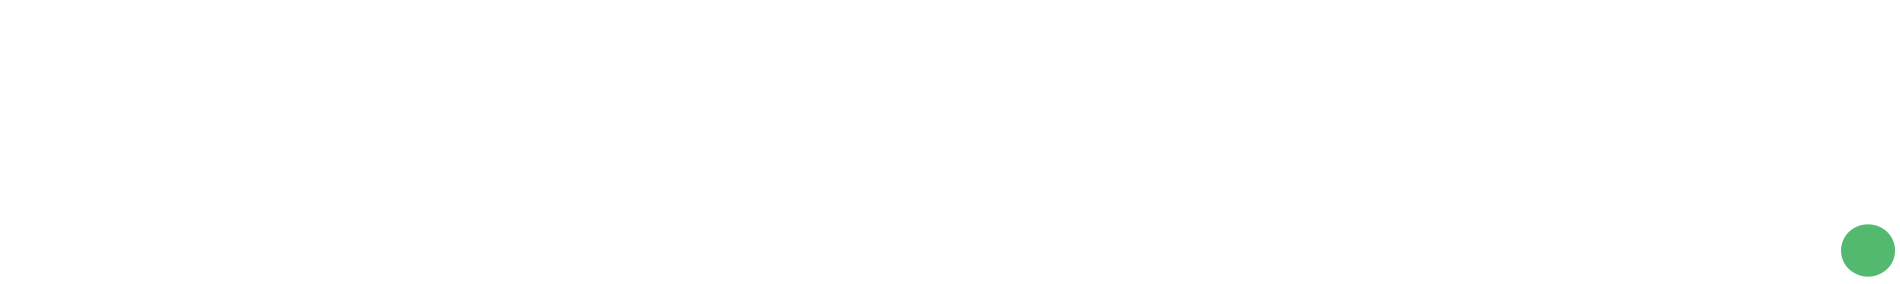 logo_type-01